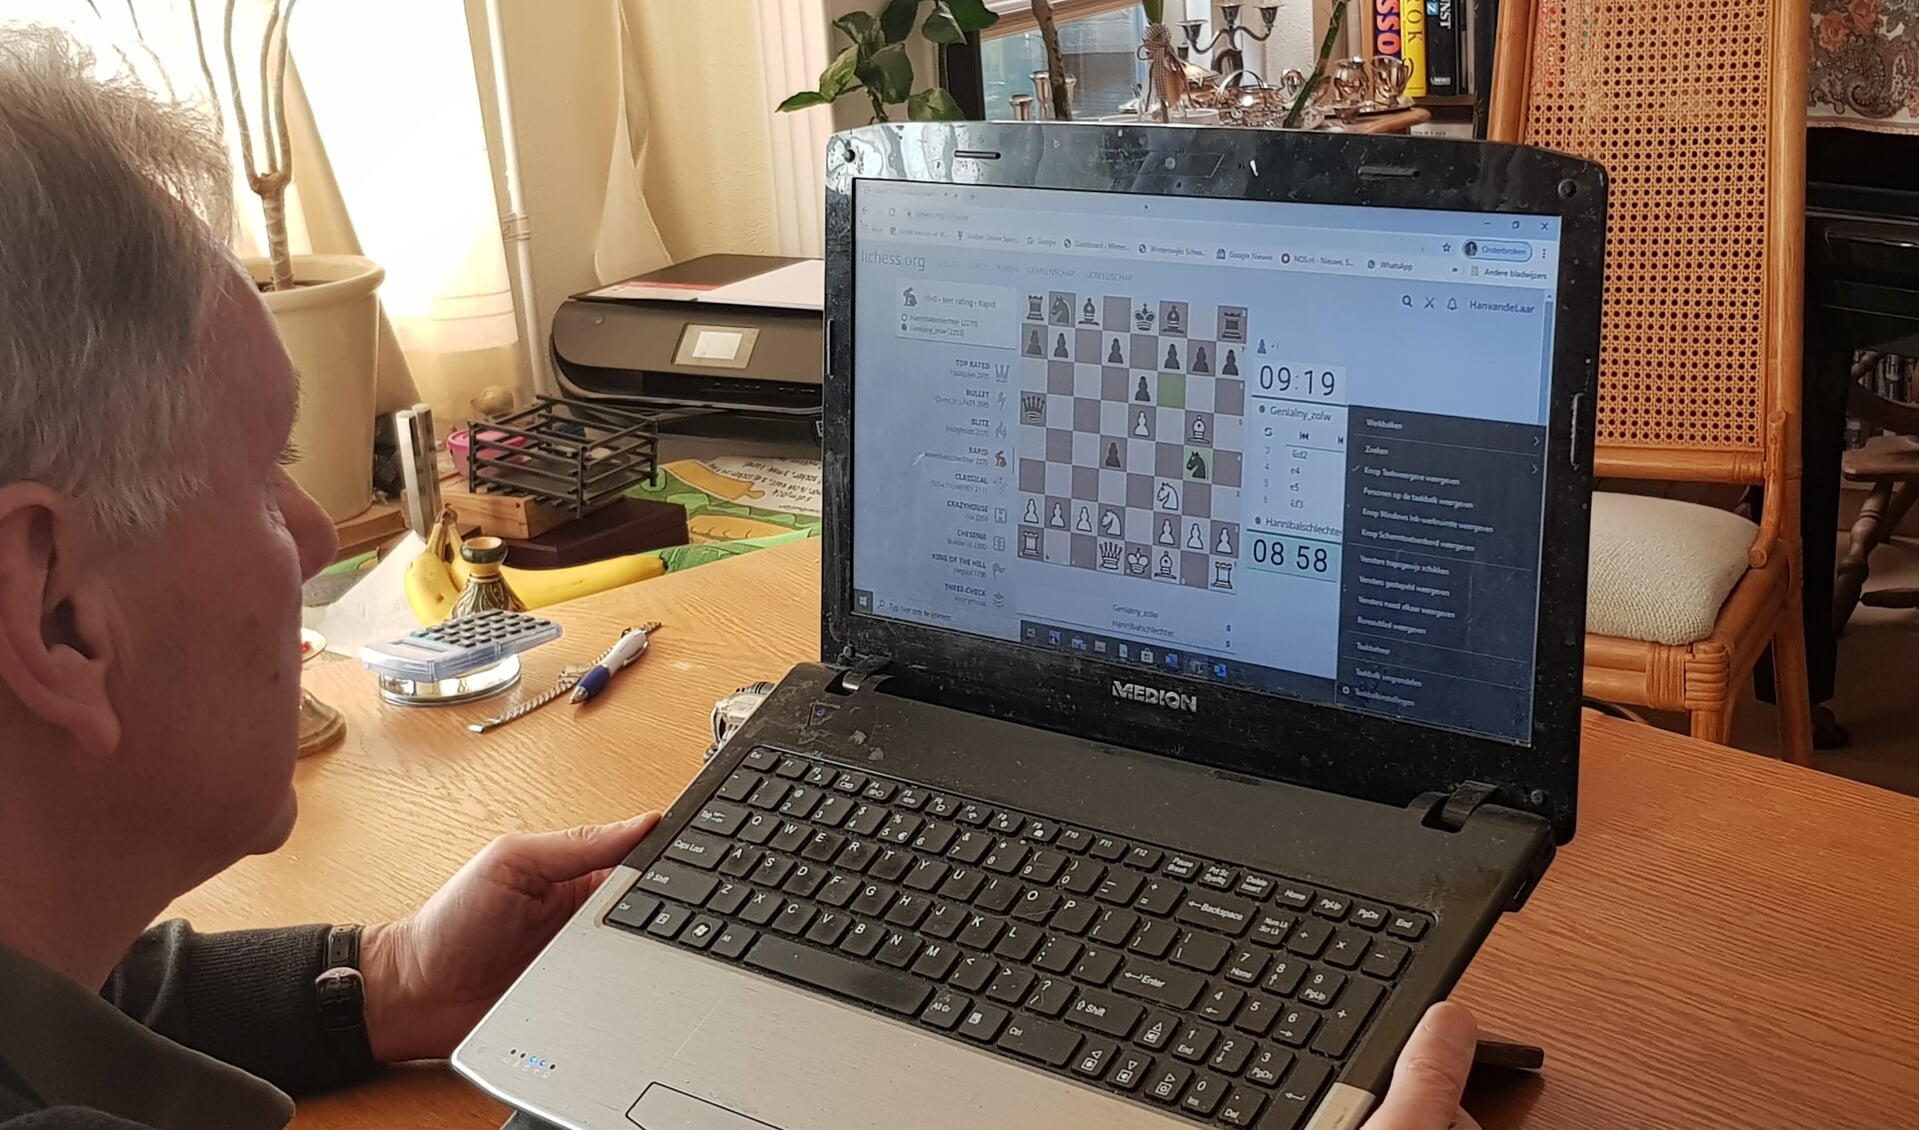 Online schaken neemt enorme vlucht en kan vanuit huis. Foto: Han van de Laar